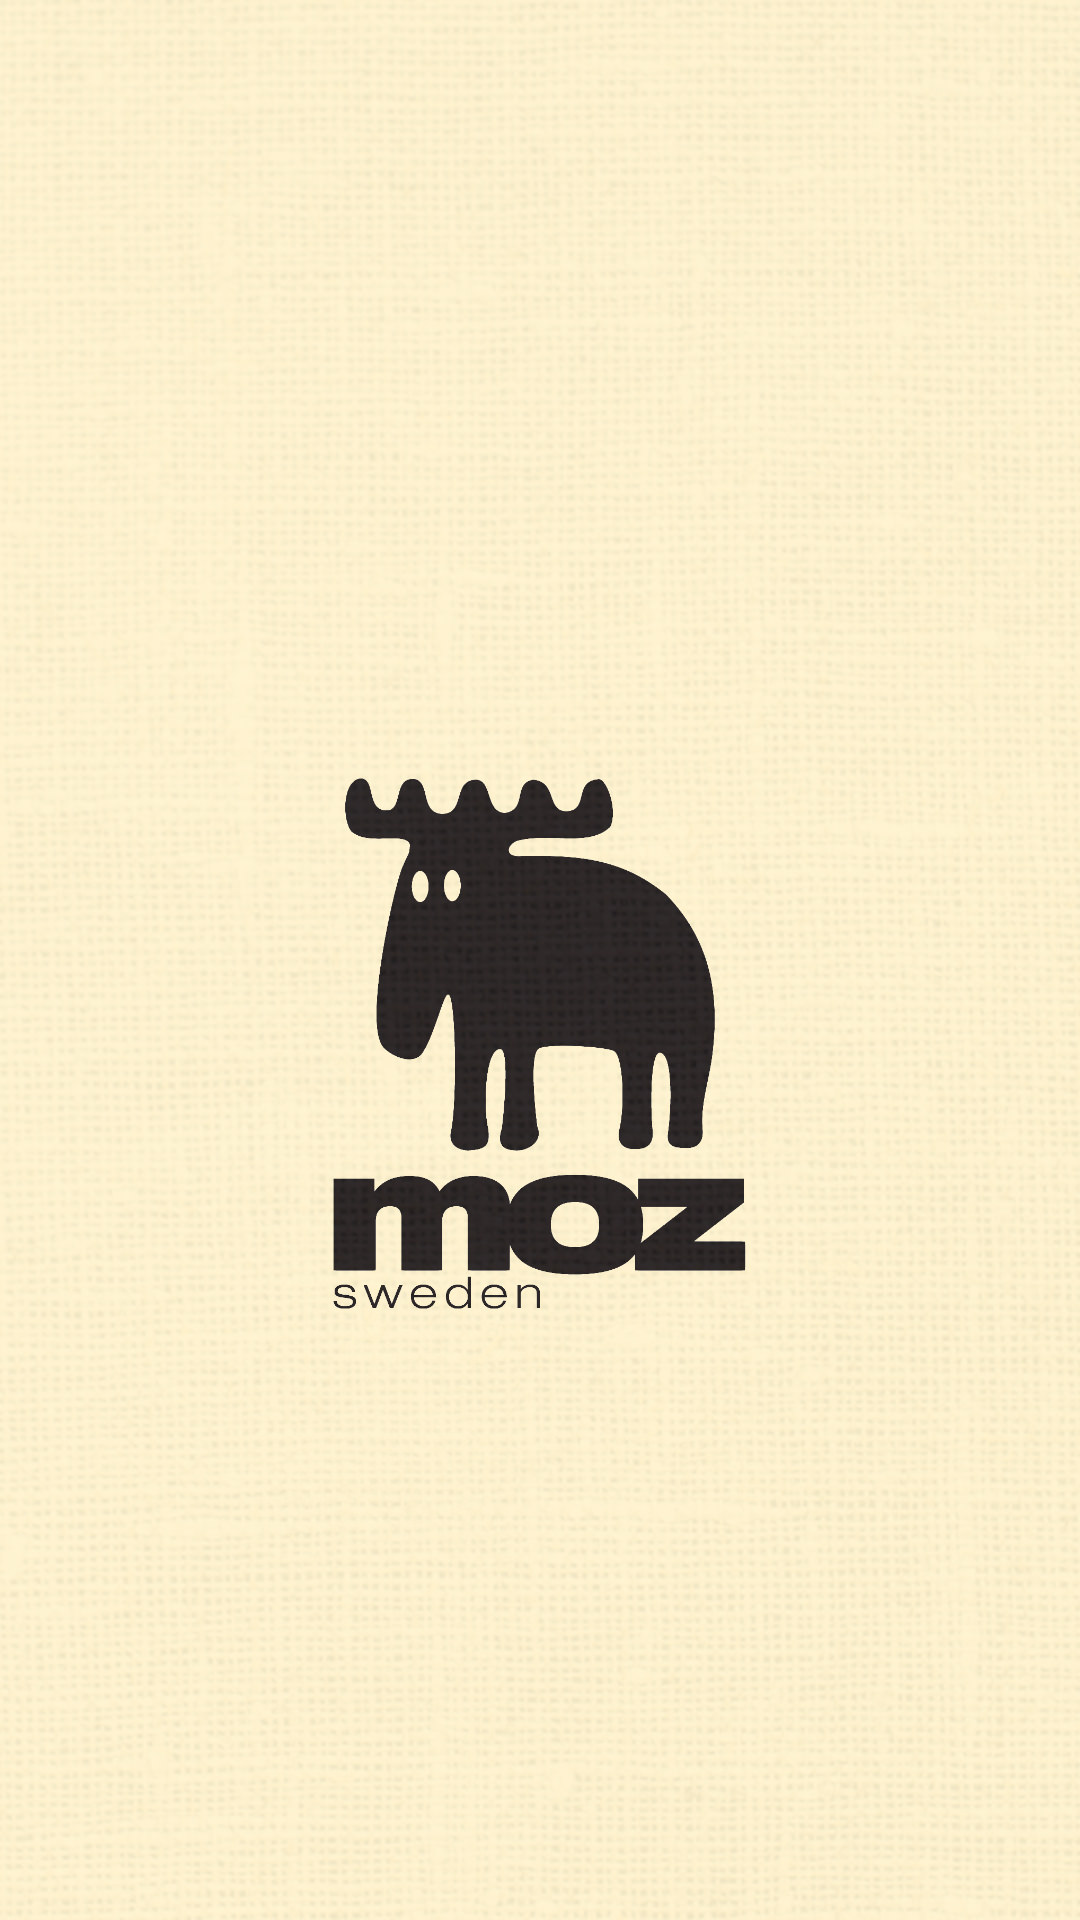 Moz モズのシンプルでかわいい無料高画質スマホ壁紙 エモい スマホ壁紙辞典